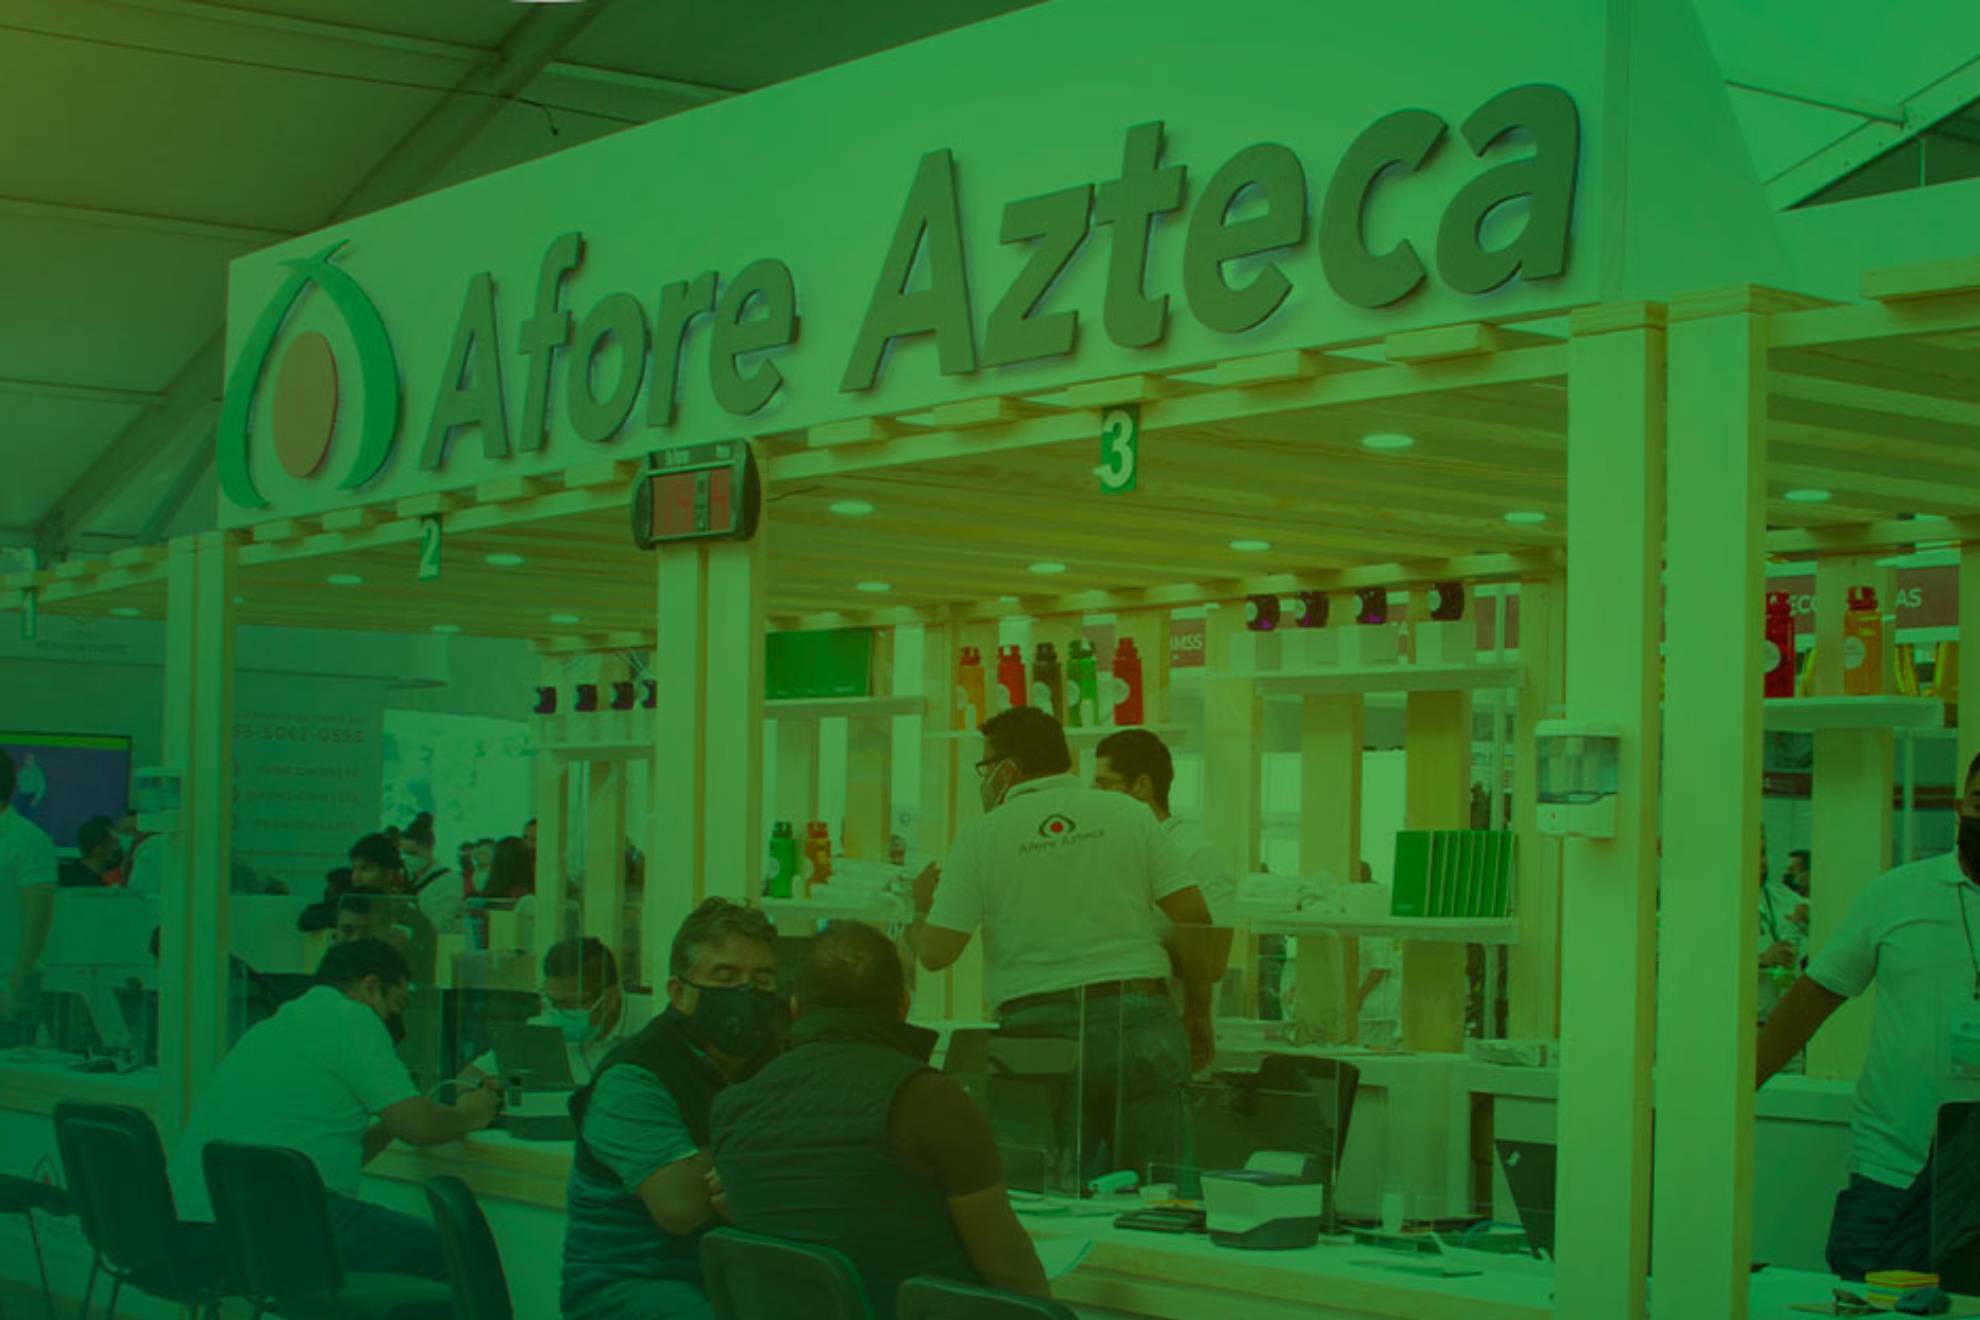 Afore Azteca es slo una de muchas instituciones que estn disponibles para llevar y administrar los ahorros de los trabajadores en Mxico